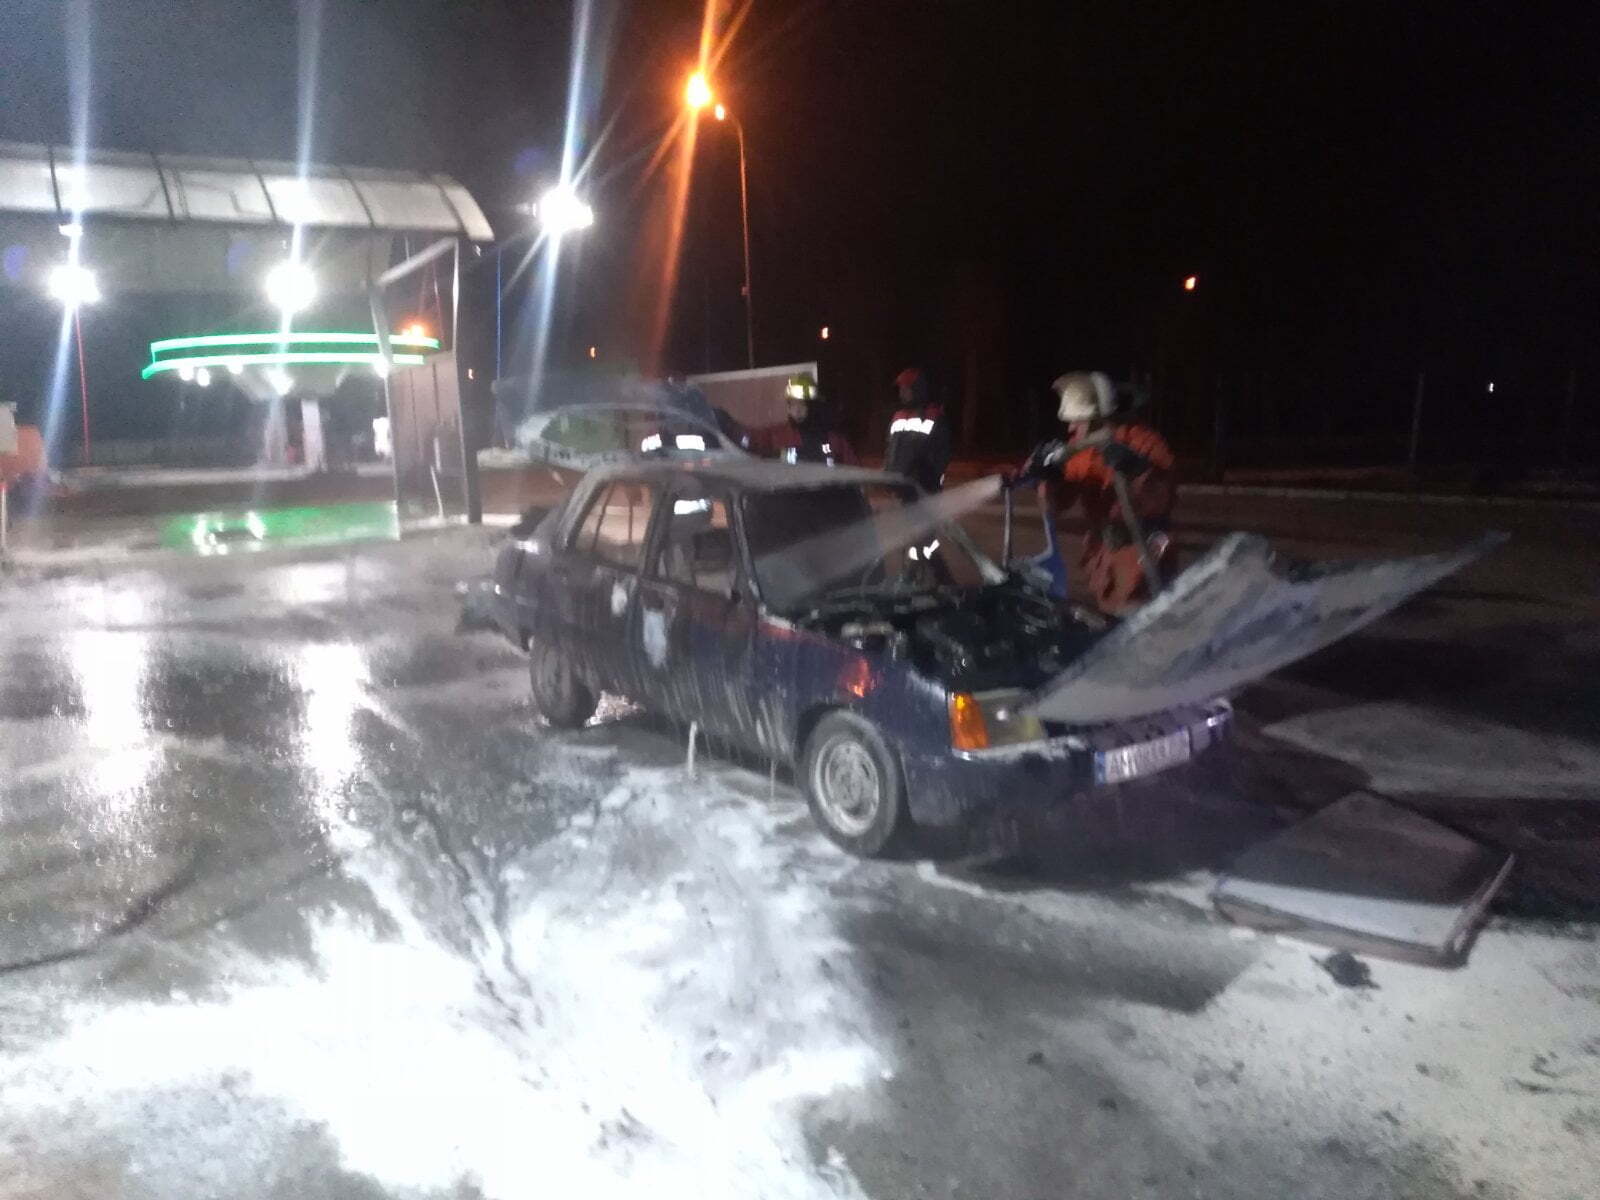 Житомирська область: під час займання автомобіля власник отримав опіки